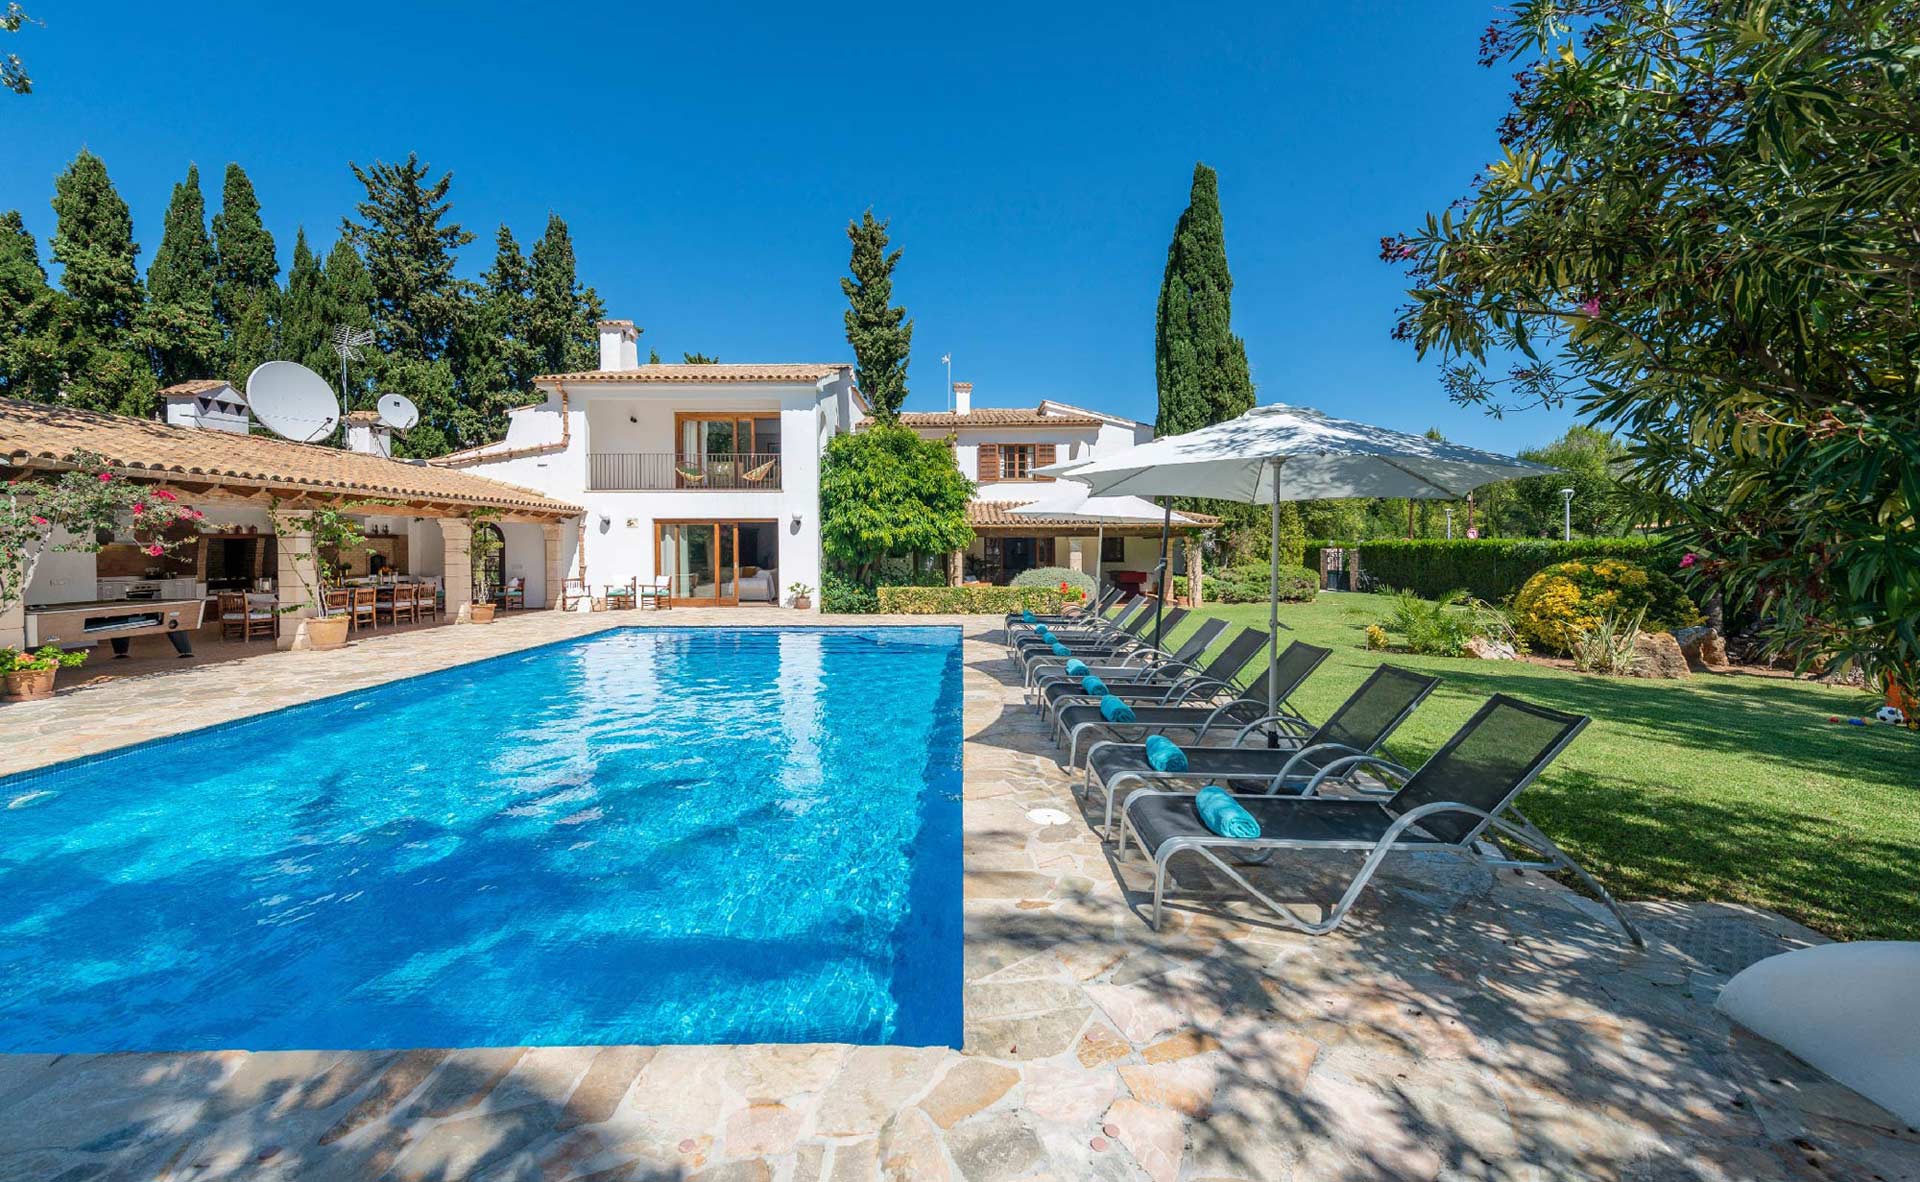 5 Considerations Before Choosing a Mallorca Holiday Villa